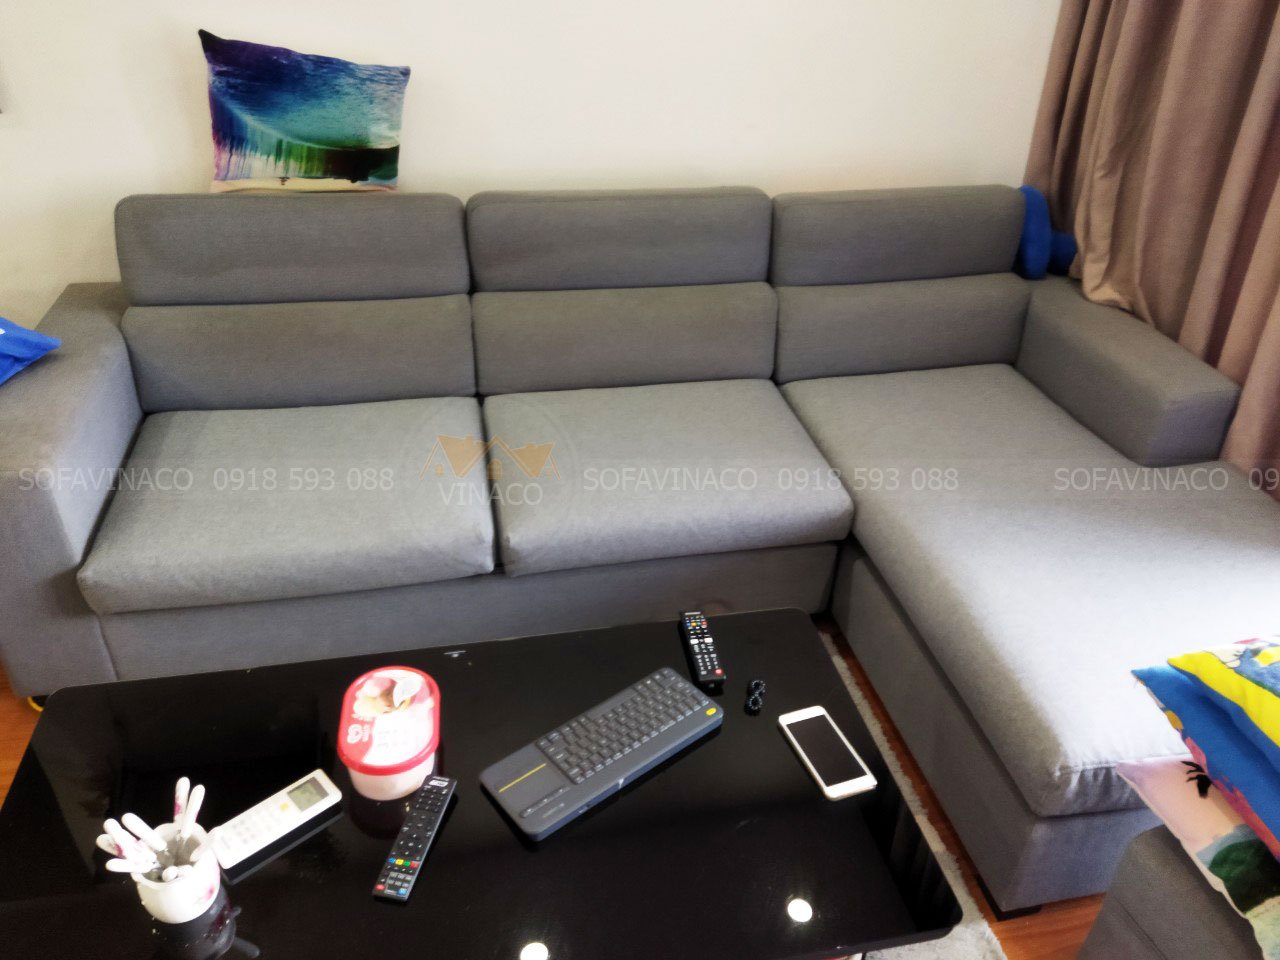 Tại sao dịch vụ bọc ghế sofa lại trở nên phổ biến và ưa chuộng đến thế?